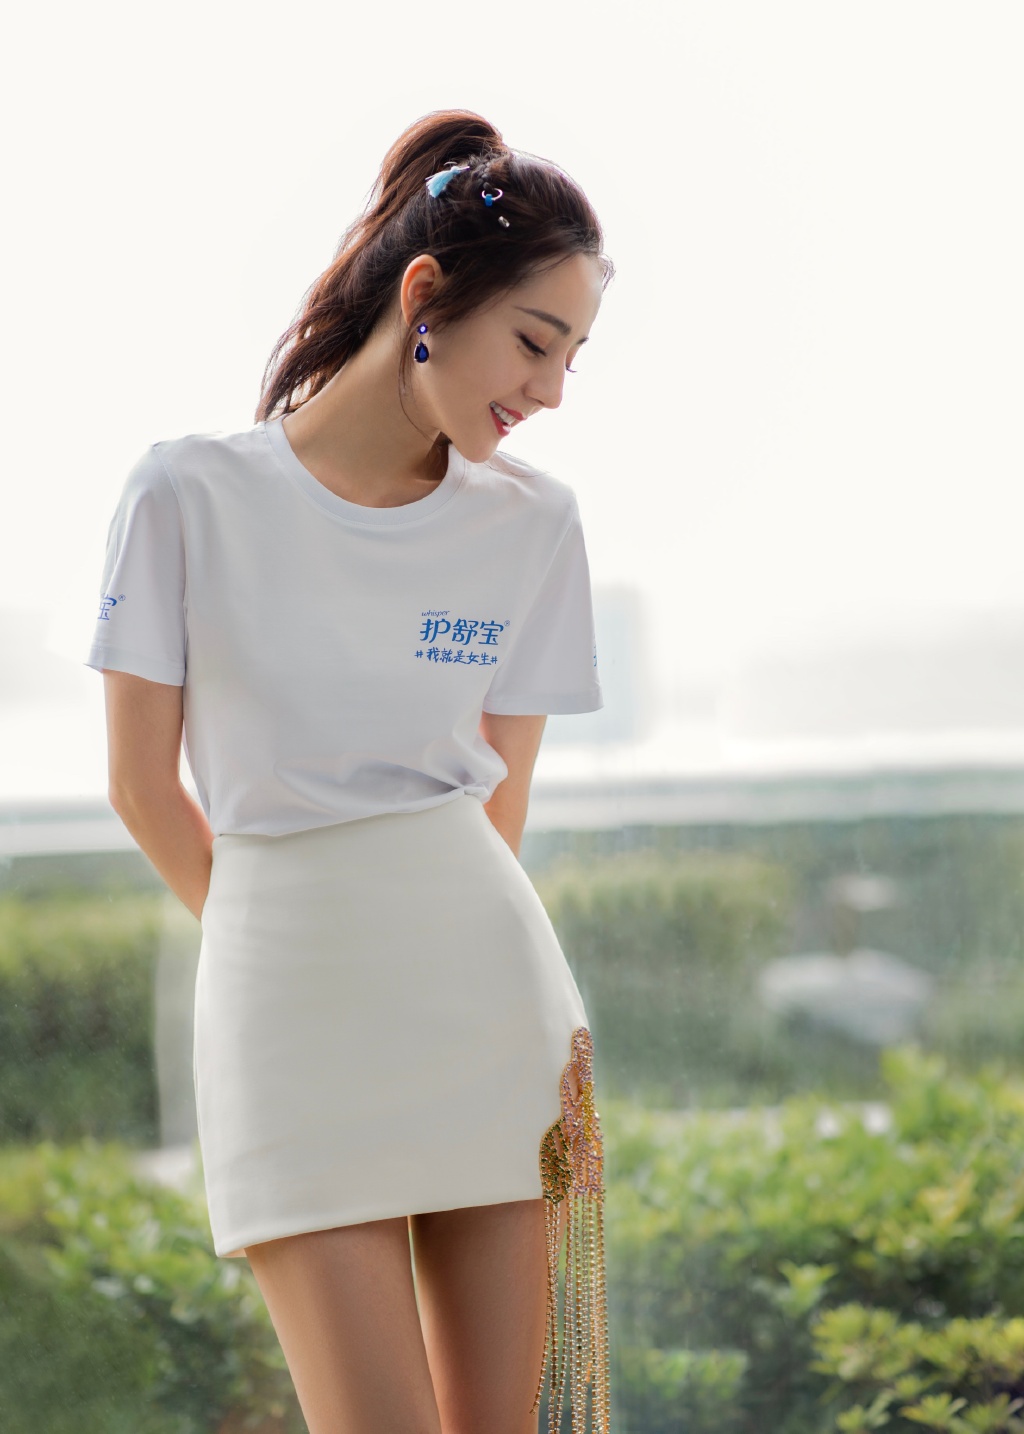 迪丽热巴清新养眼白色T恤紧身短裙超美品牌代言写真照片